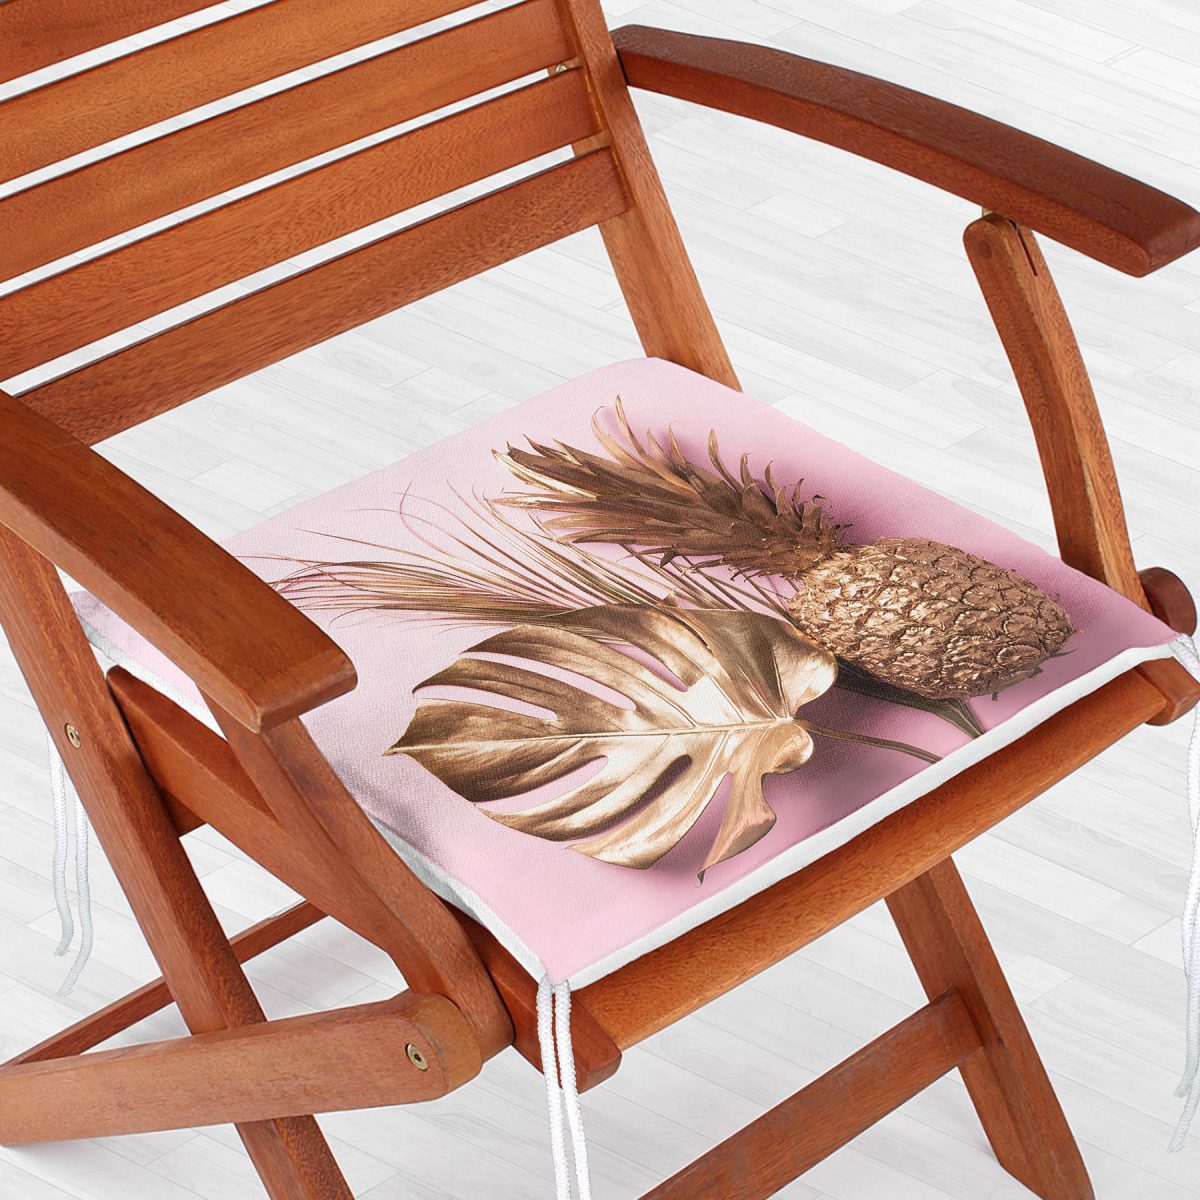 3D Yaprak ve Ananas Desenli Özel Tasarım Fermuarlı Sandalye Minderi Realhomes